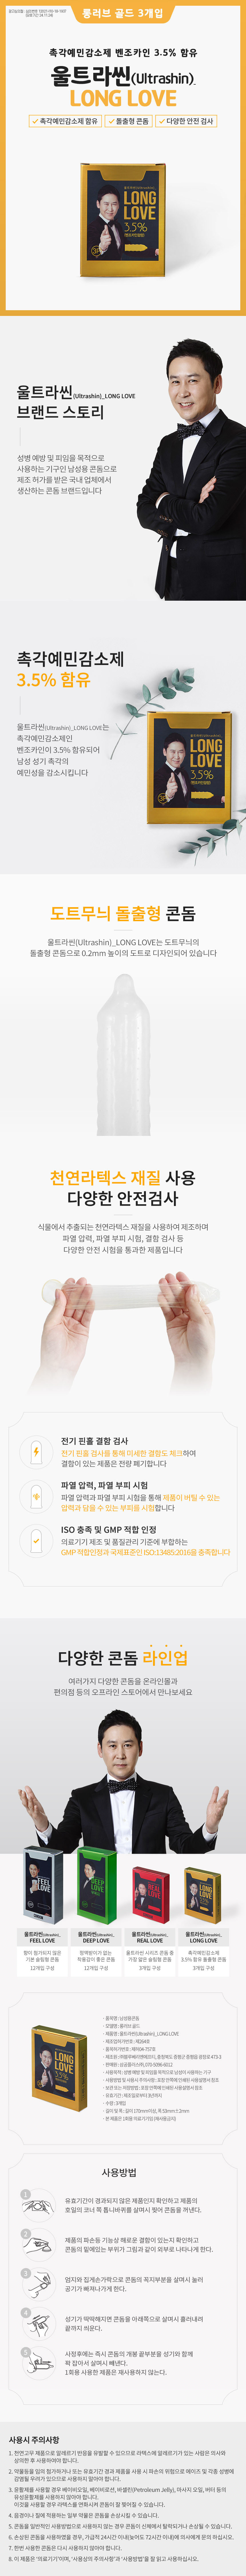 신동엽의 울트라씬 롱러브 3p - 사정지연 콘돔 (특수 돌출형)